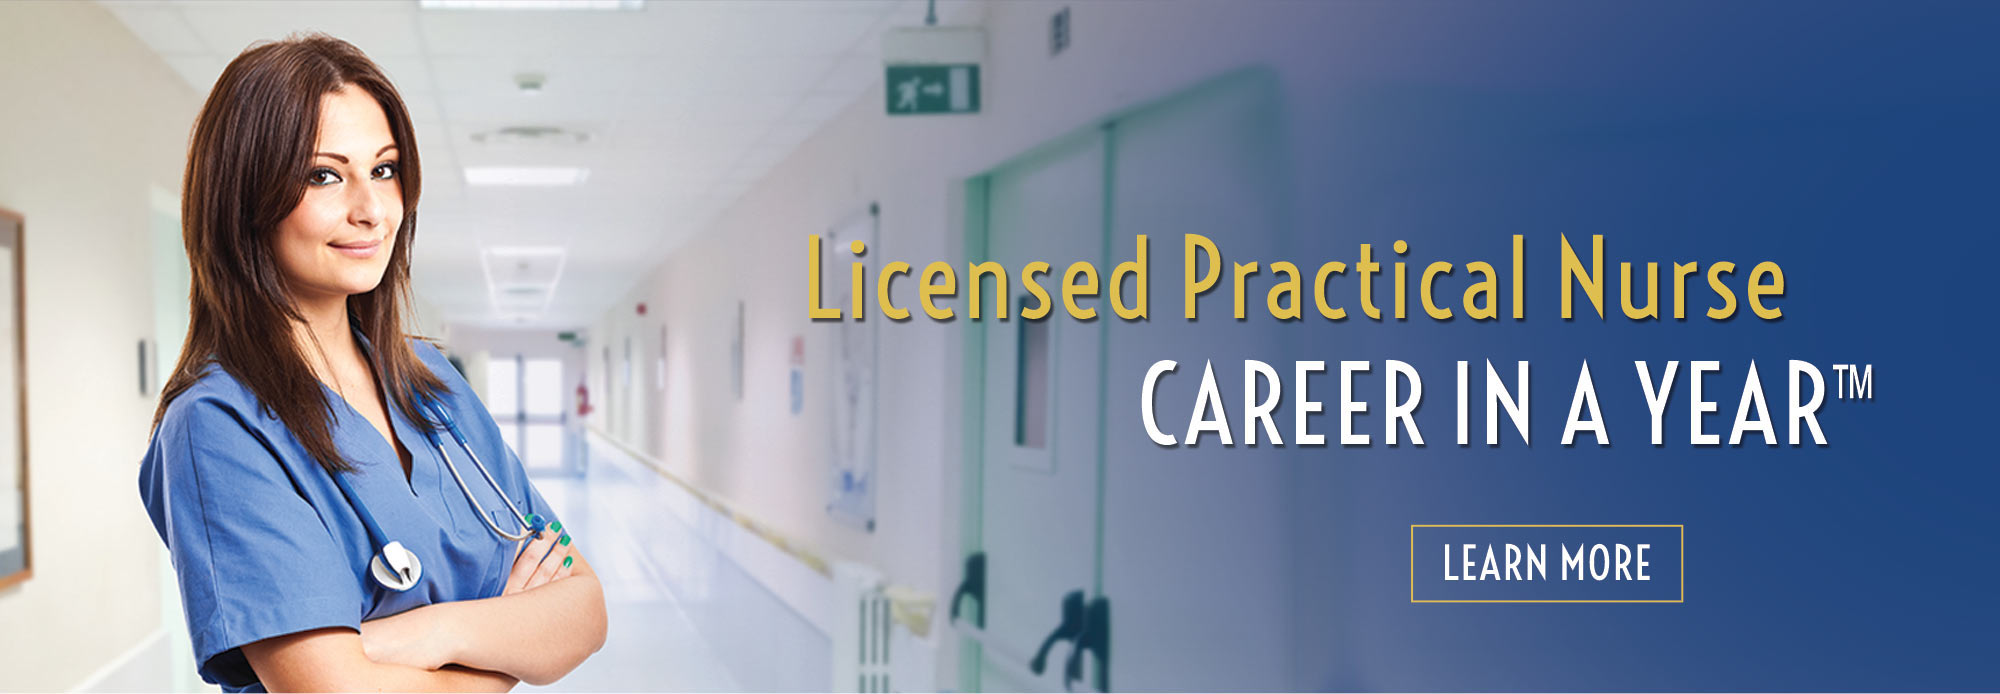 Licensed Practical Nurse Career in a Year